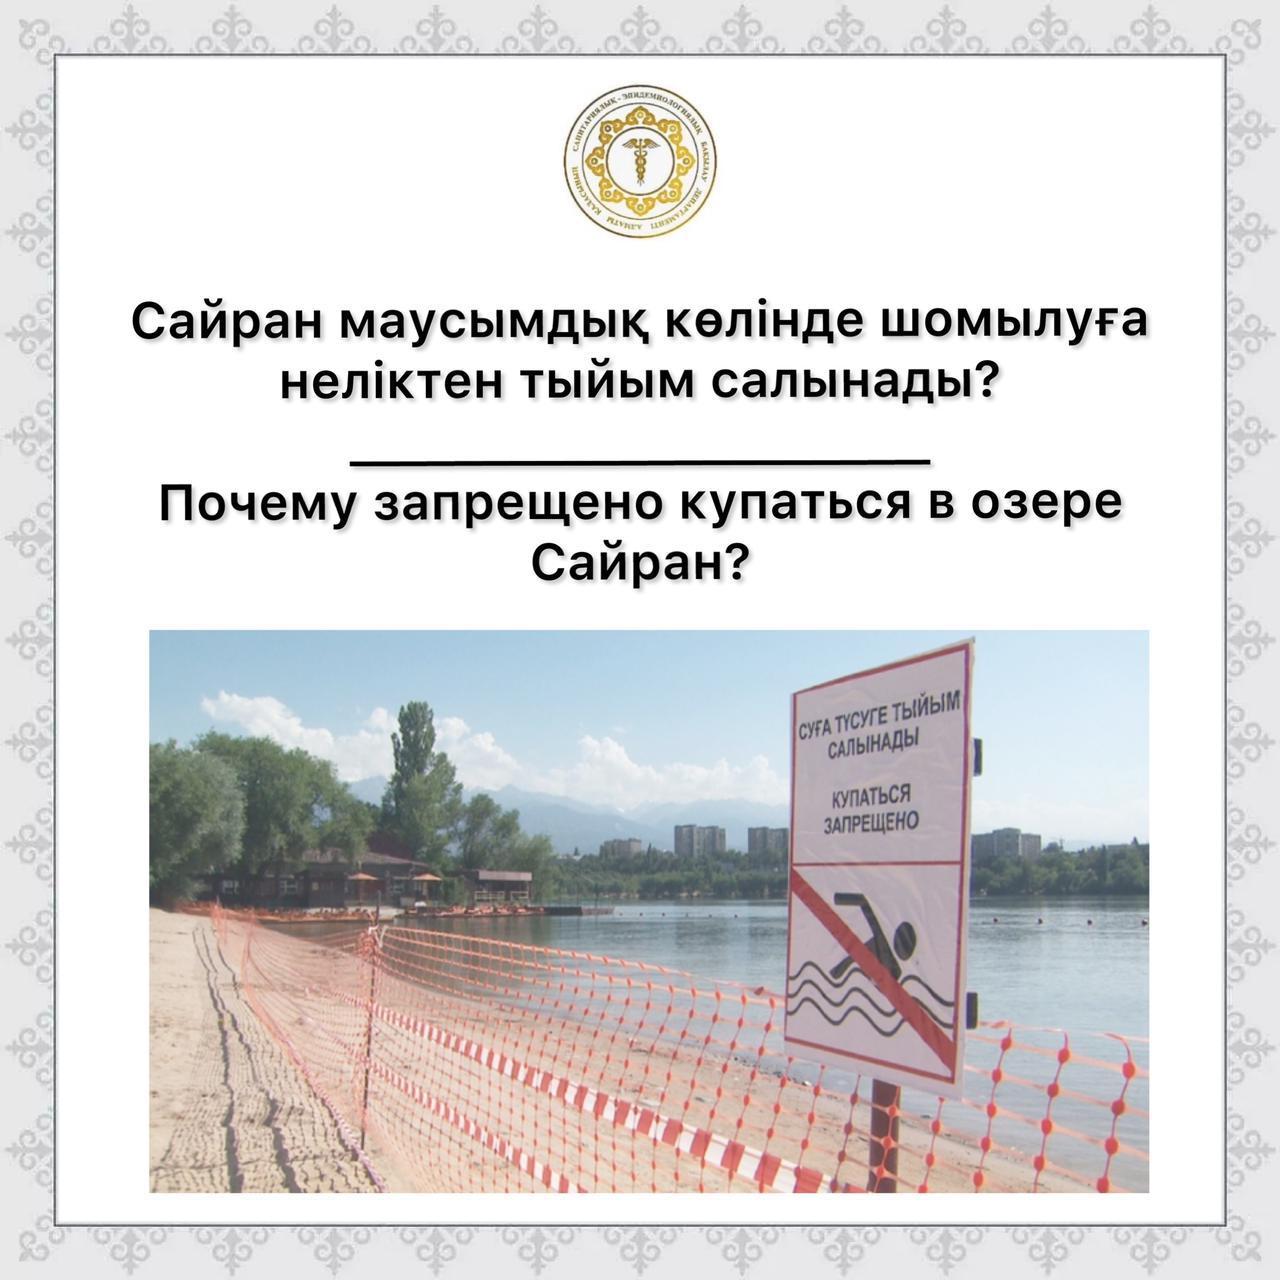 Почему запрещено купаться в озере Сайран?